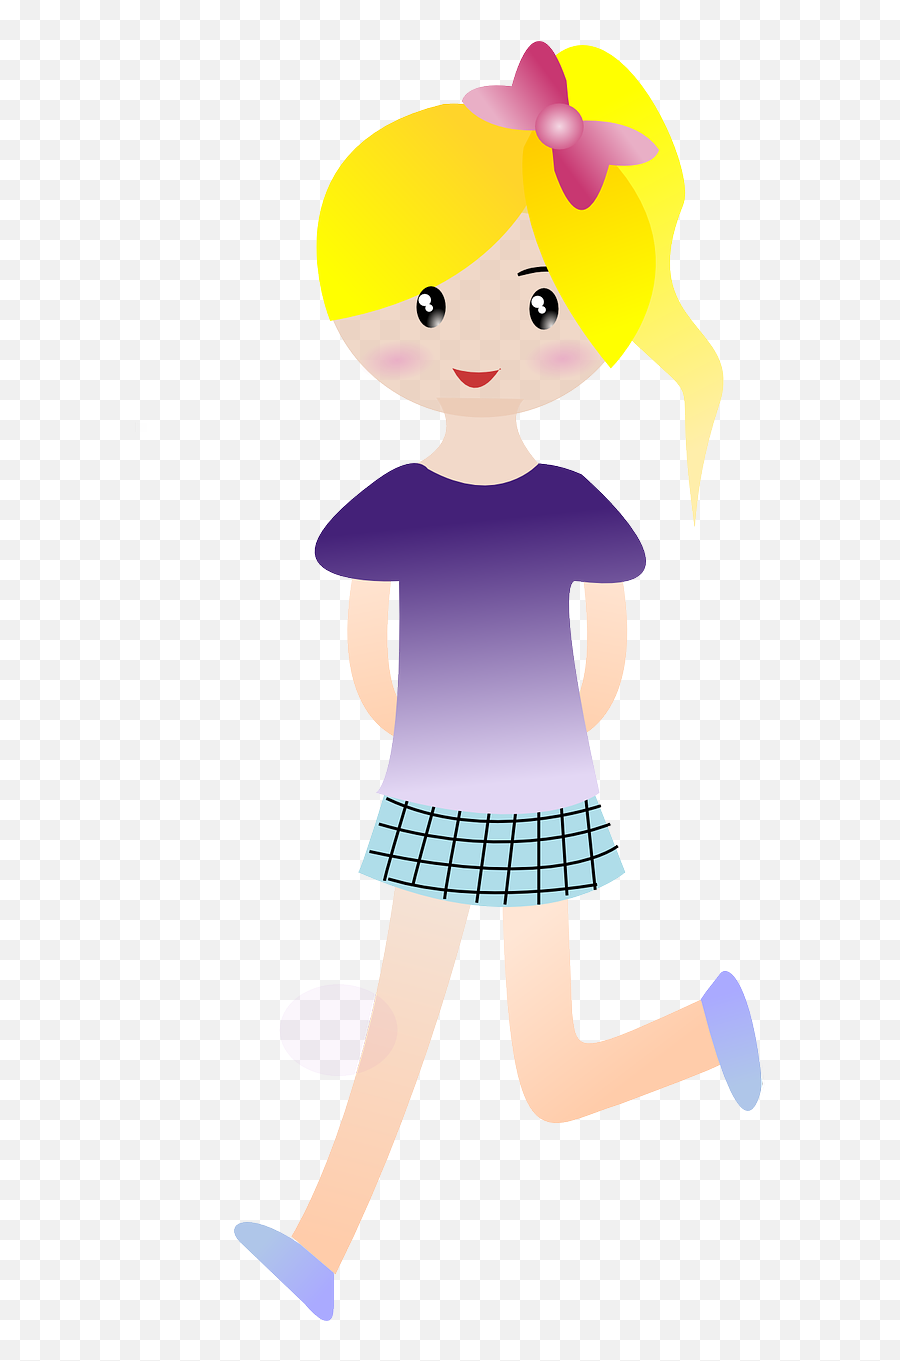 Girl Ponytail Running Walking Png Image - Cartoon Girl Walking,Girl Walking Png